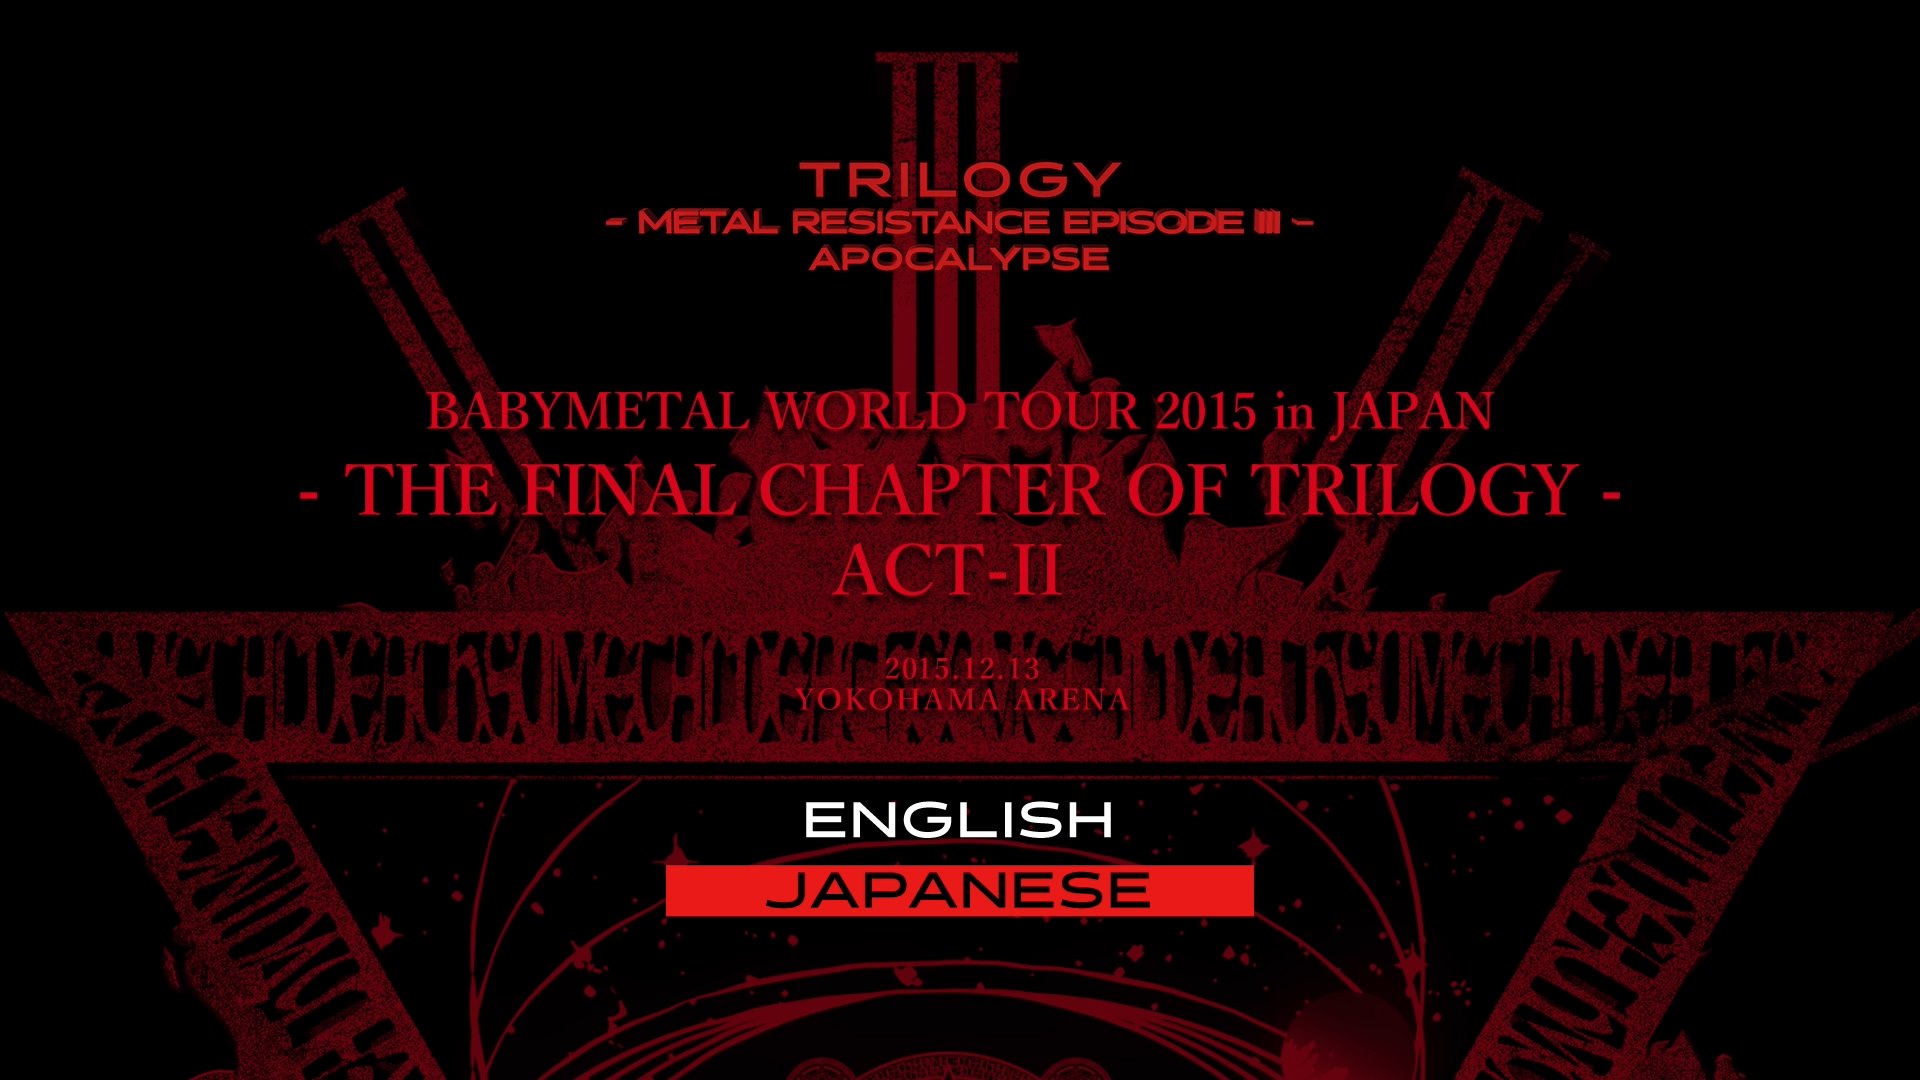 BABYMETAL Trilogy - Metal Resistance Episode III - Apocalypse 